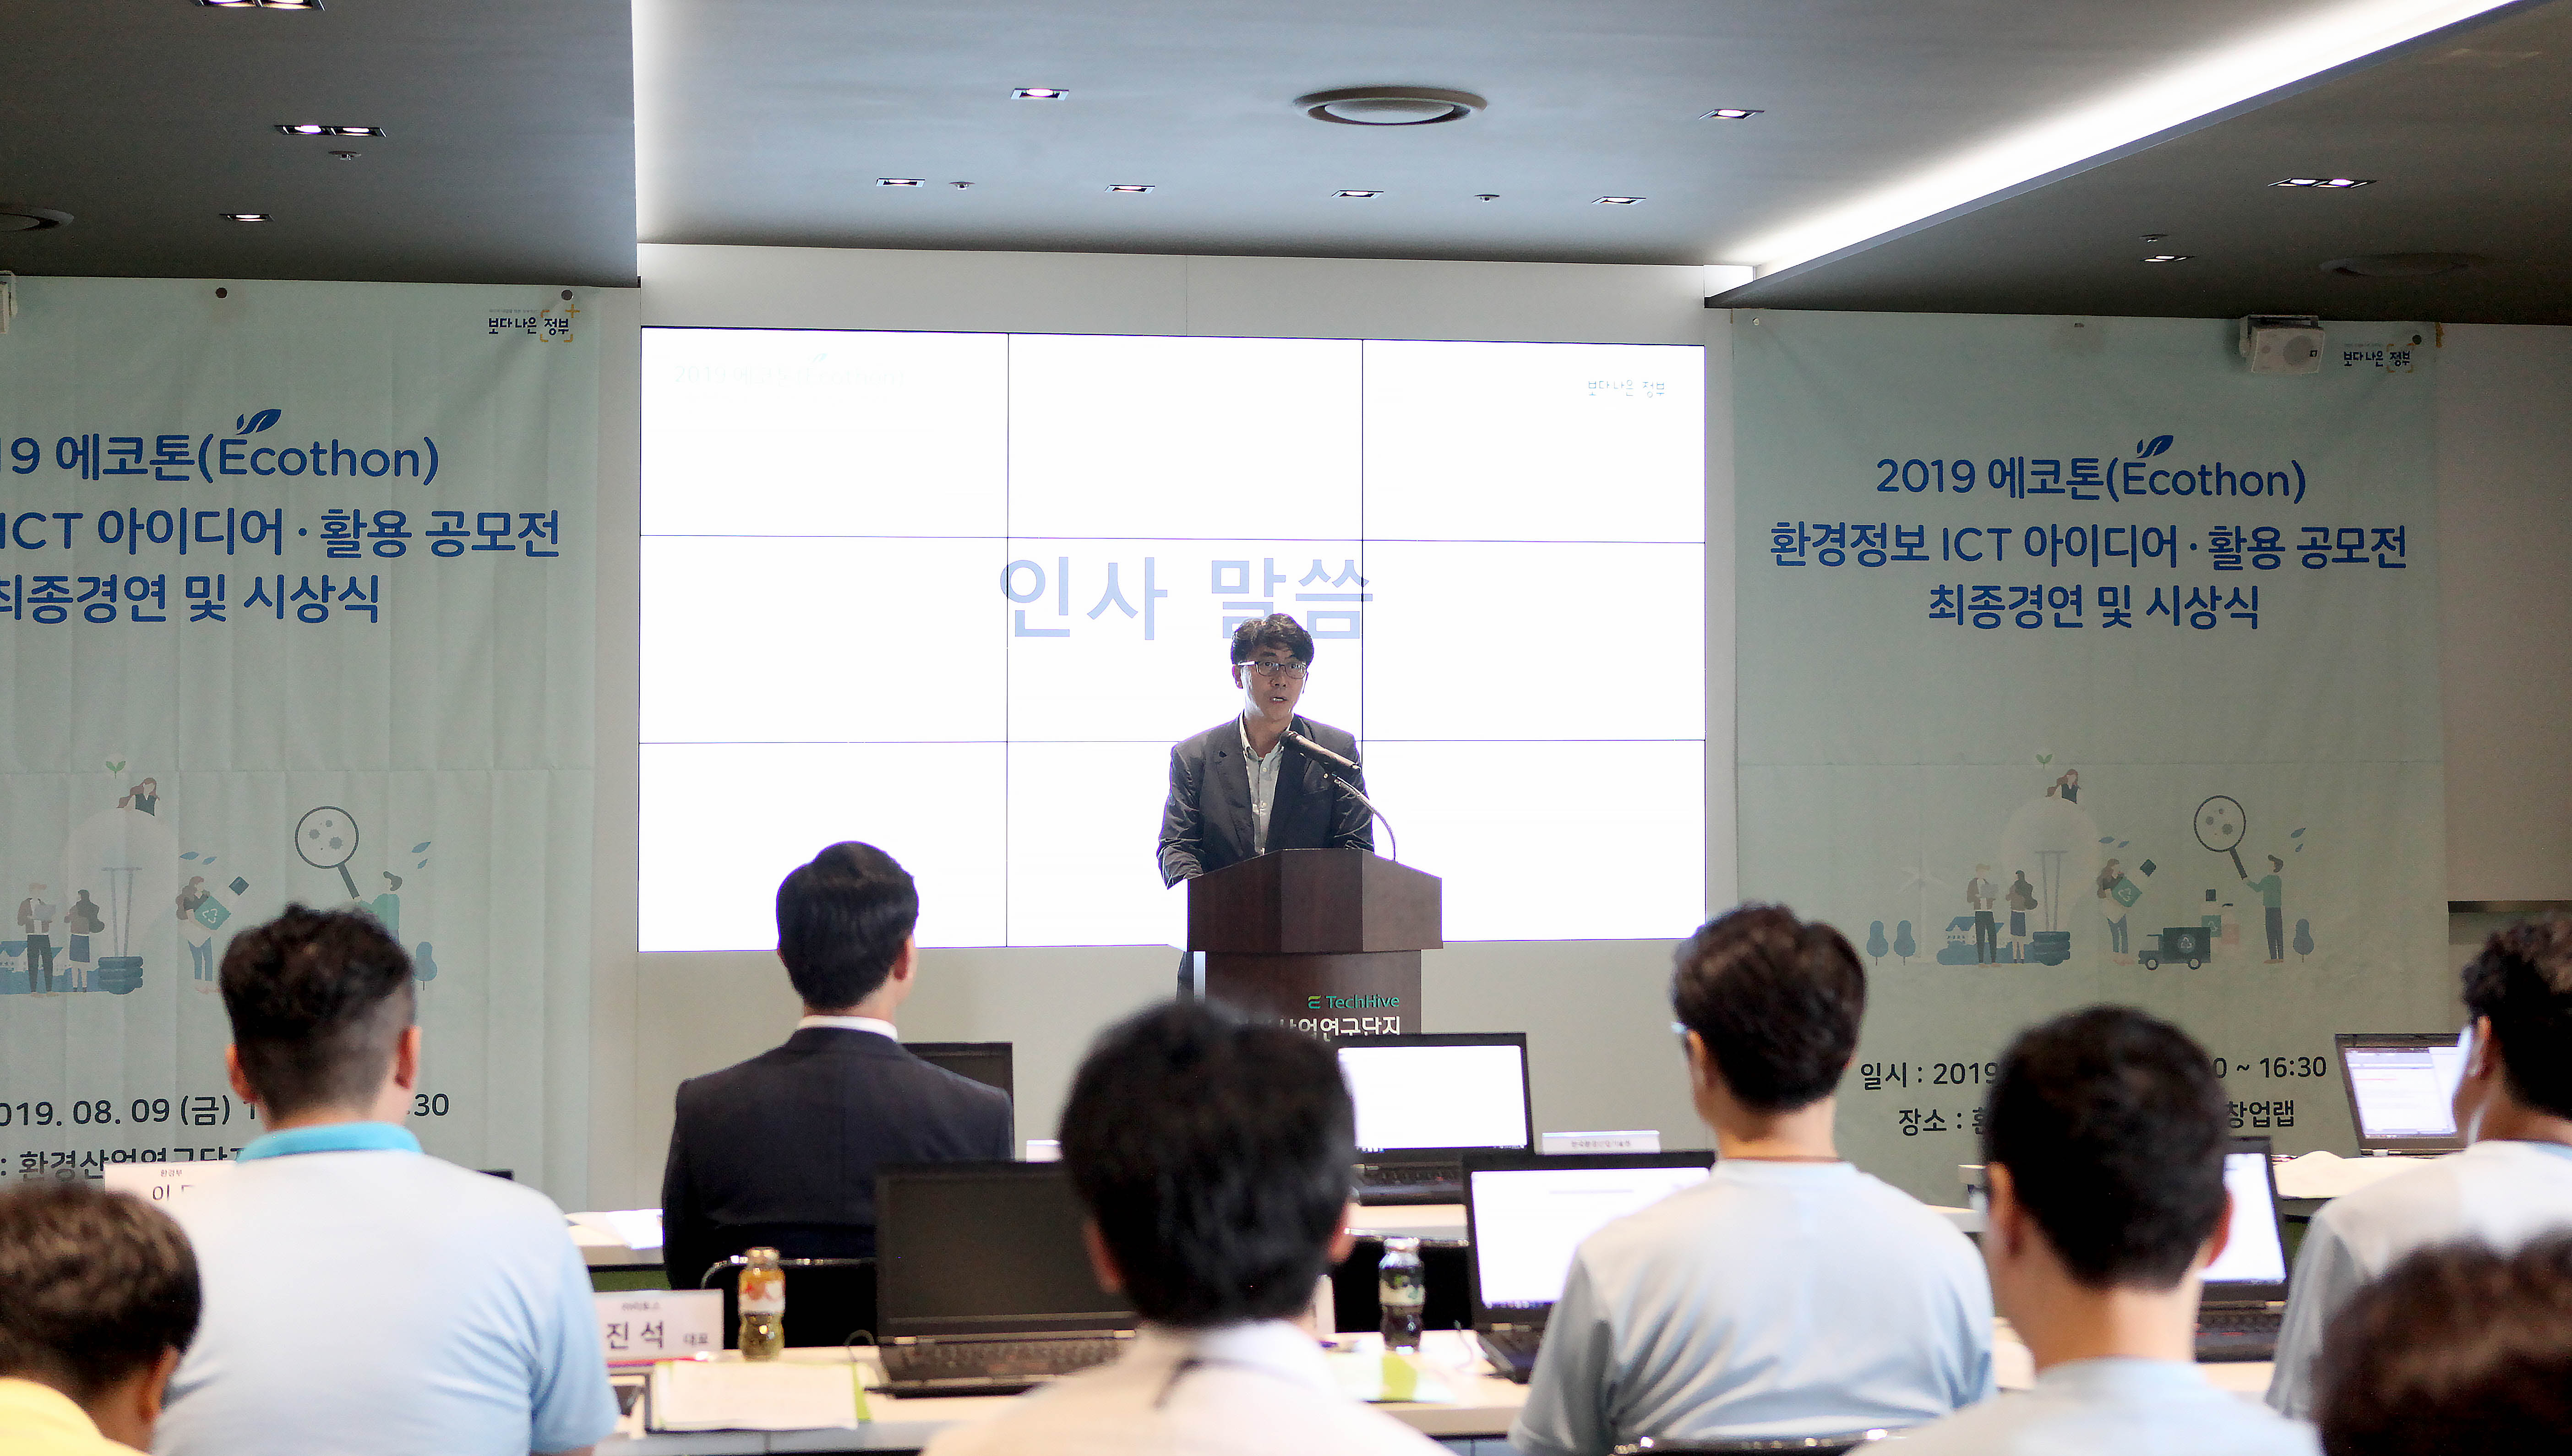 2019 환경정보 ICT 아이디어·활용 공모전(에코톤) 최종 경연대회 개최